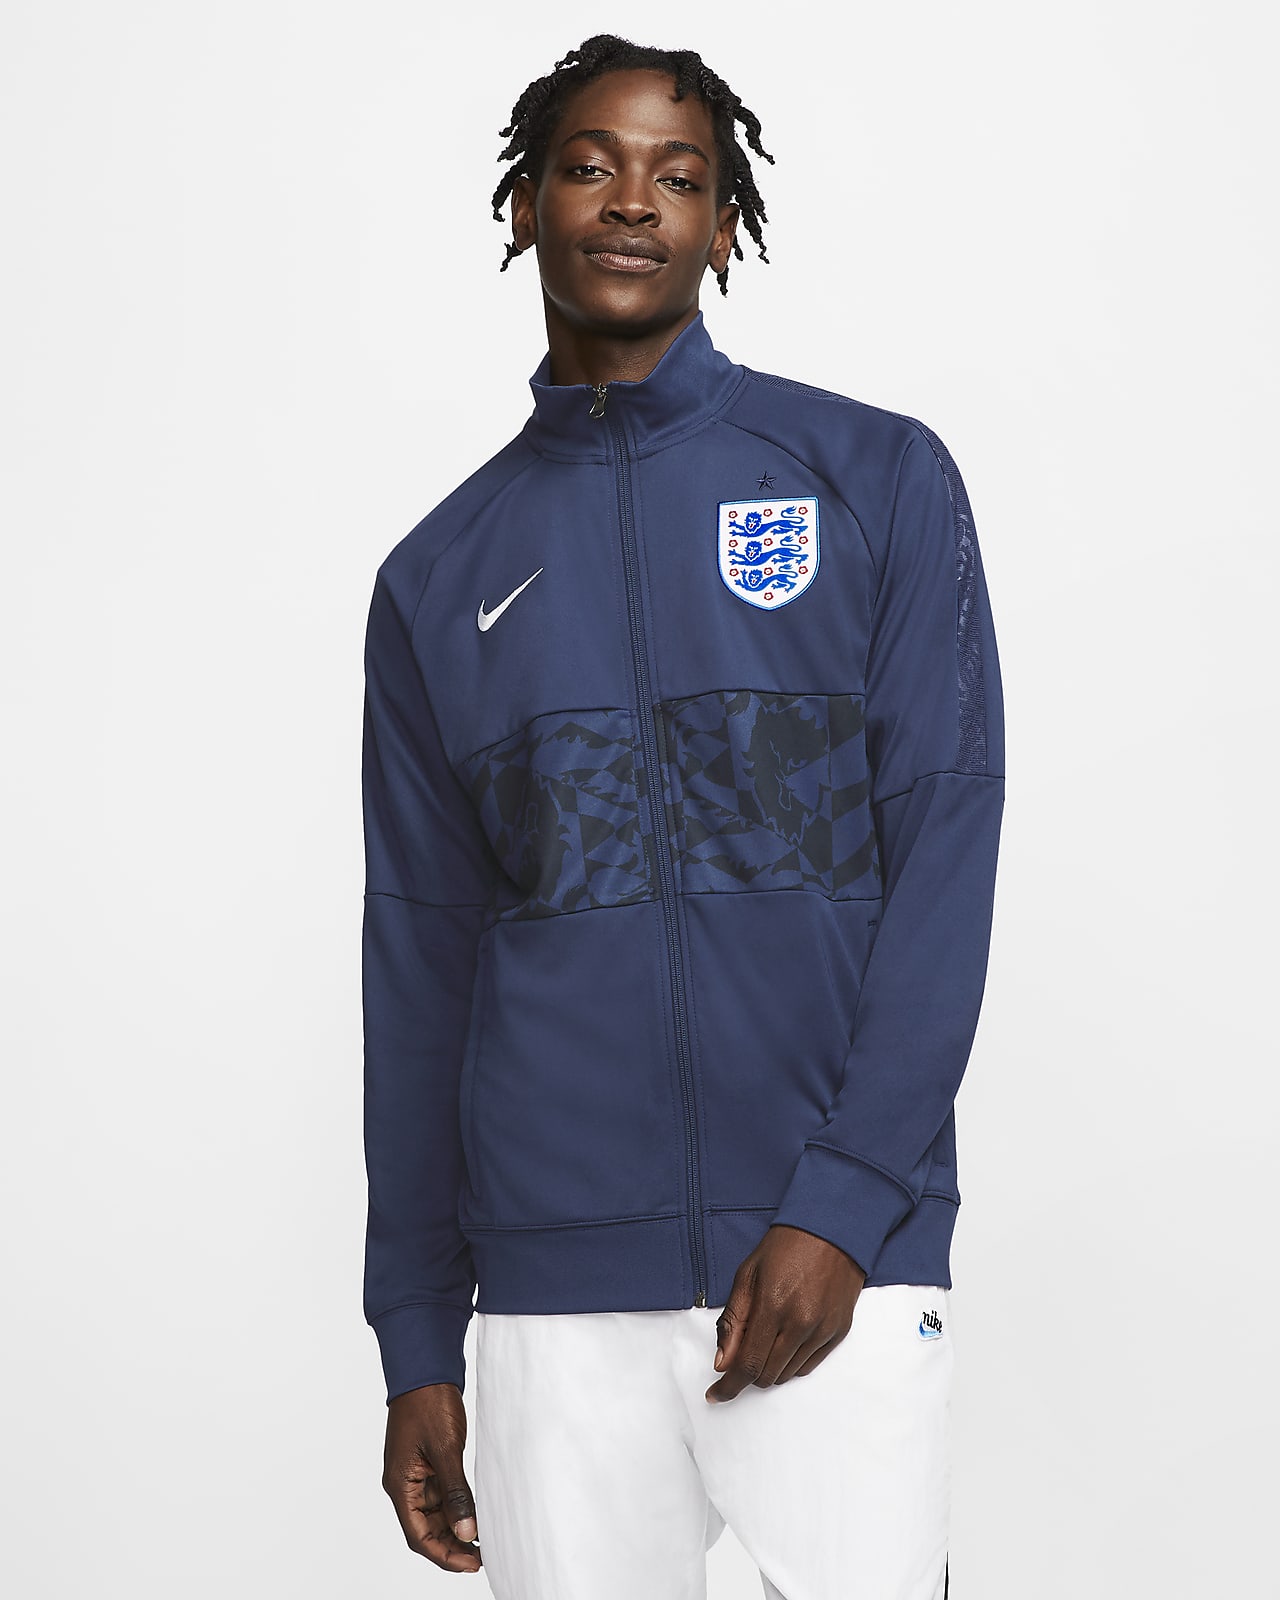 England Men's Football Jacket. Nike SA